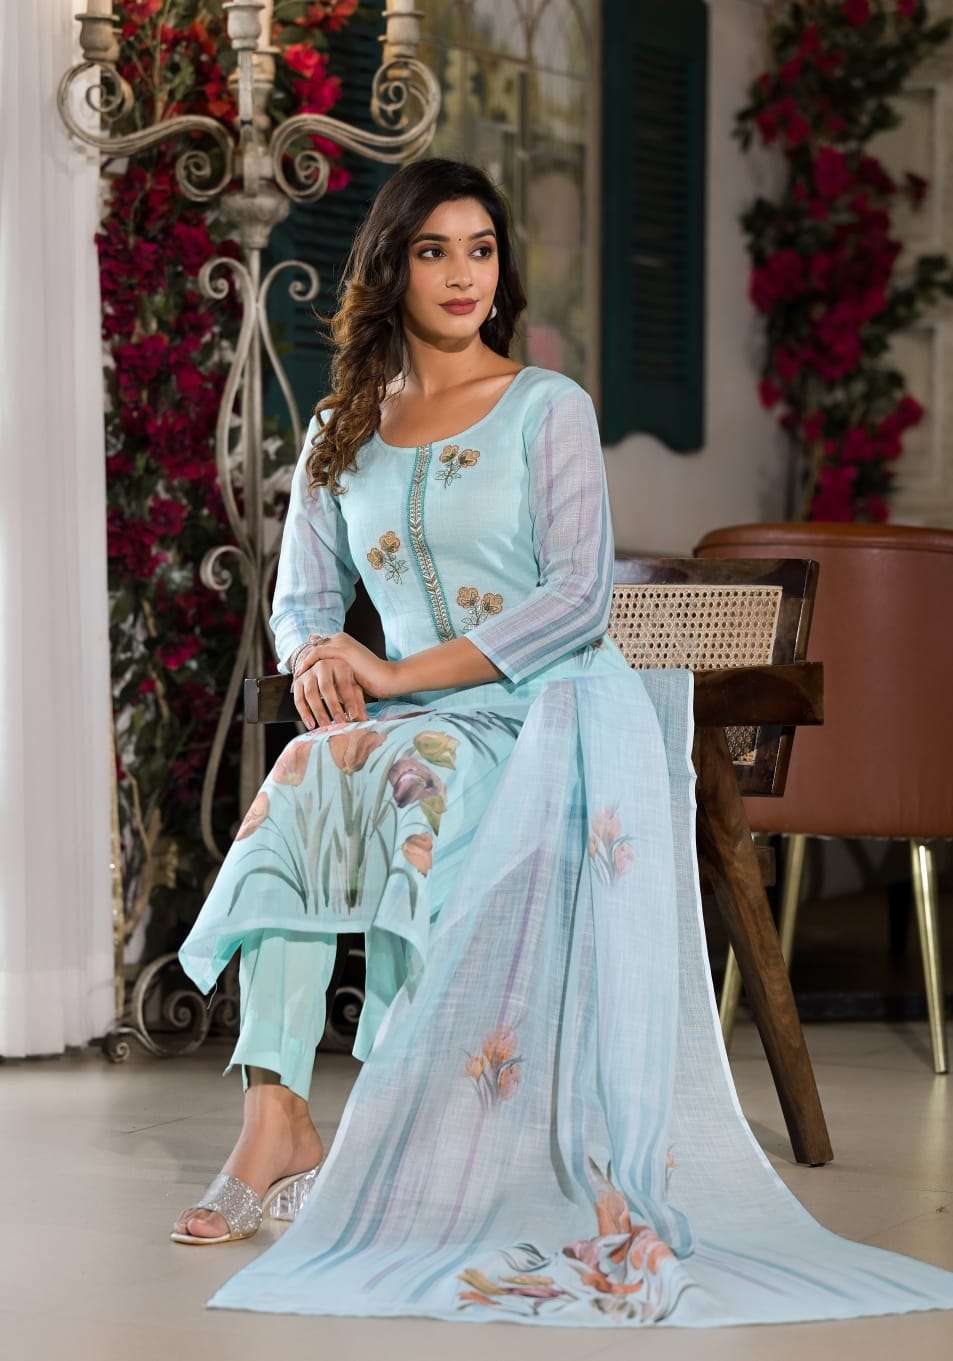 khazana suit Label Khoj d no 9619 linen cotton elegant look Kurti With pant size set